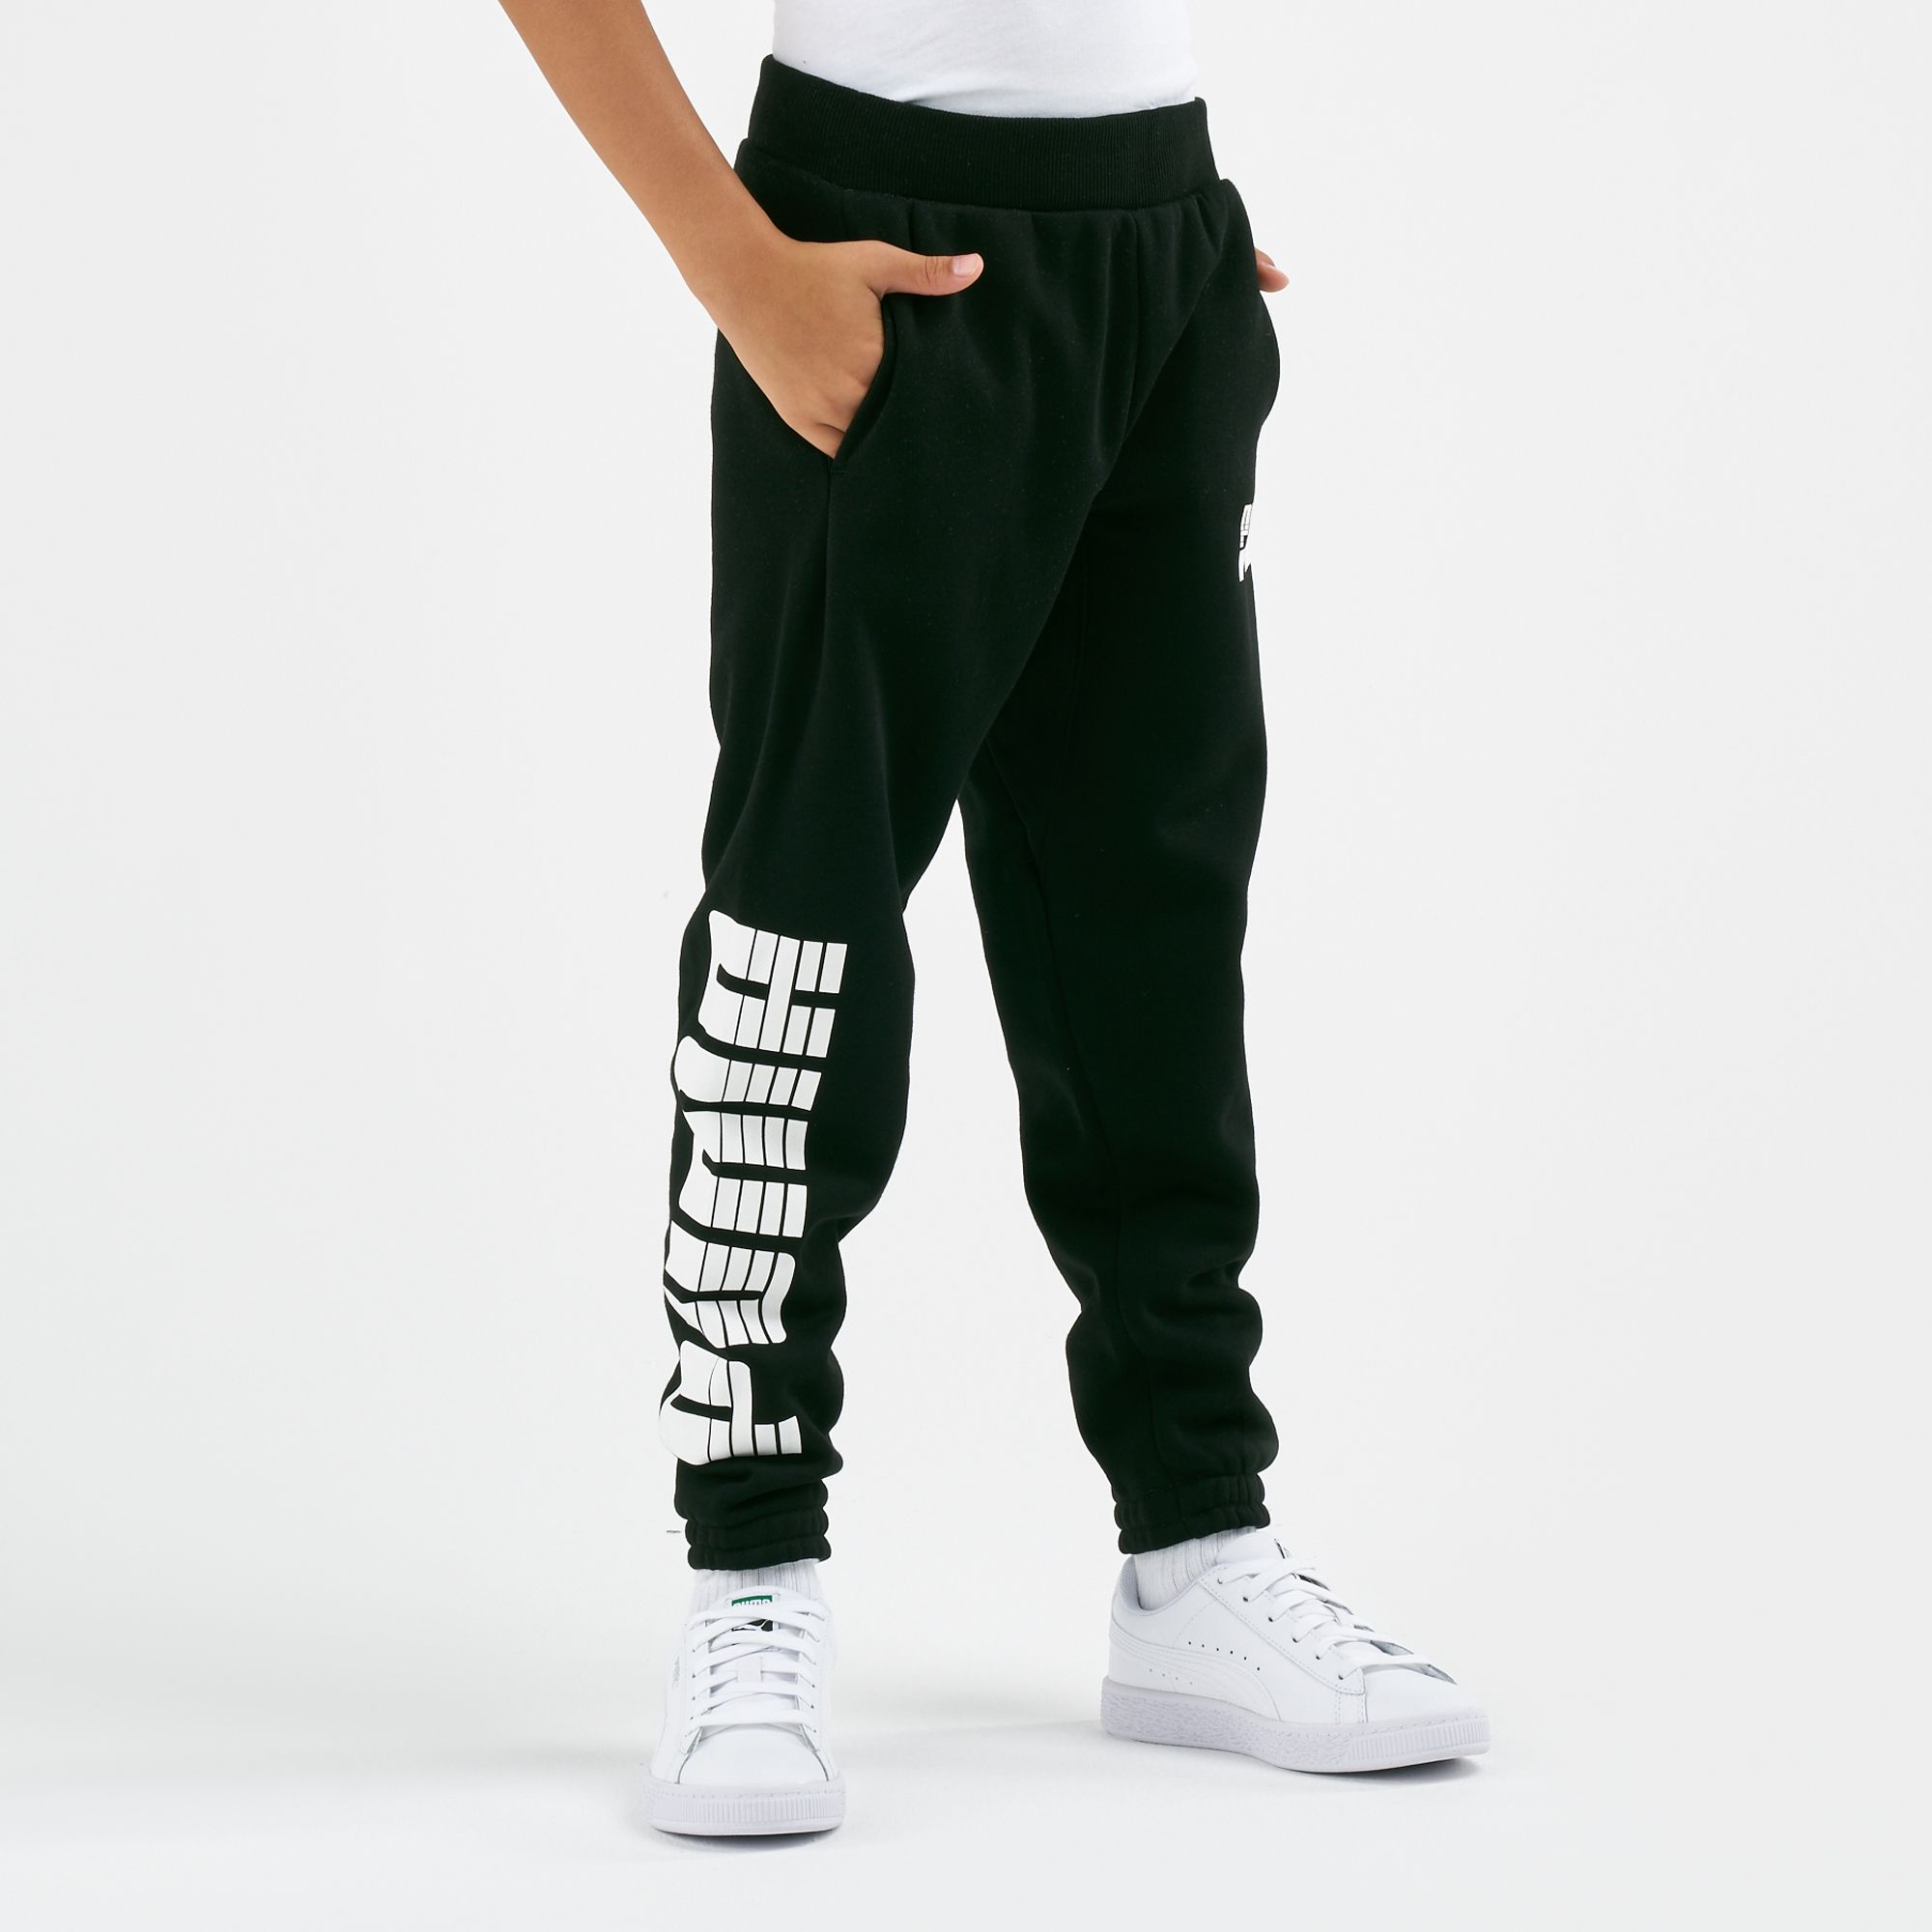  Nike Women's Dri-FIT Rebel Fleece 7/8 Training Pants